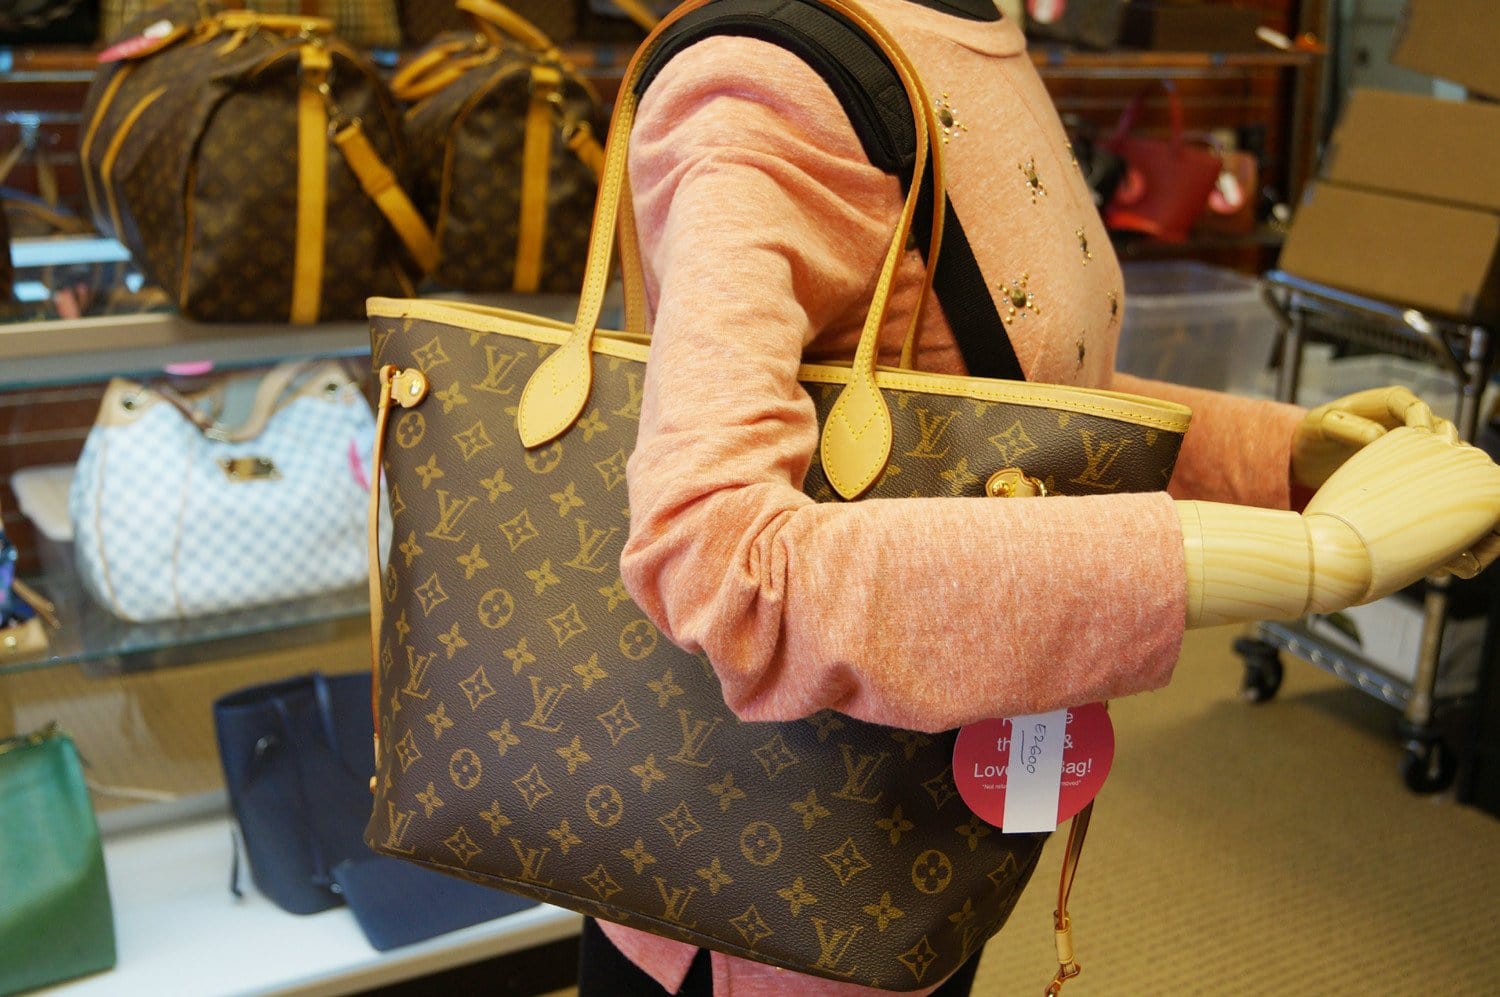 Louis Vuitton, Bags, Authentic Louis Vuitton Neverfull Mm